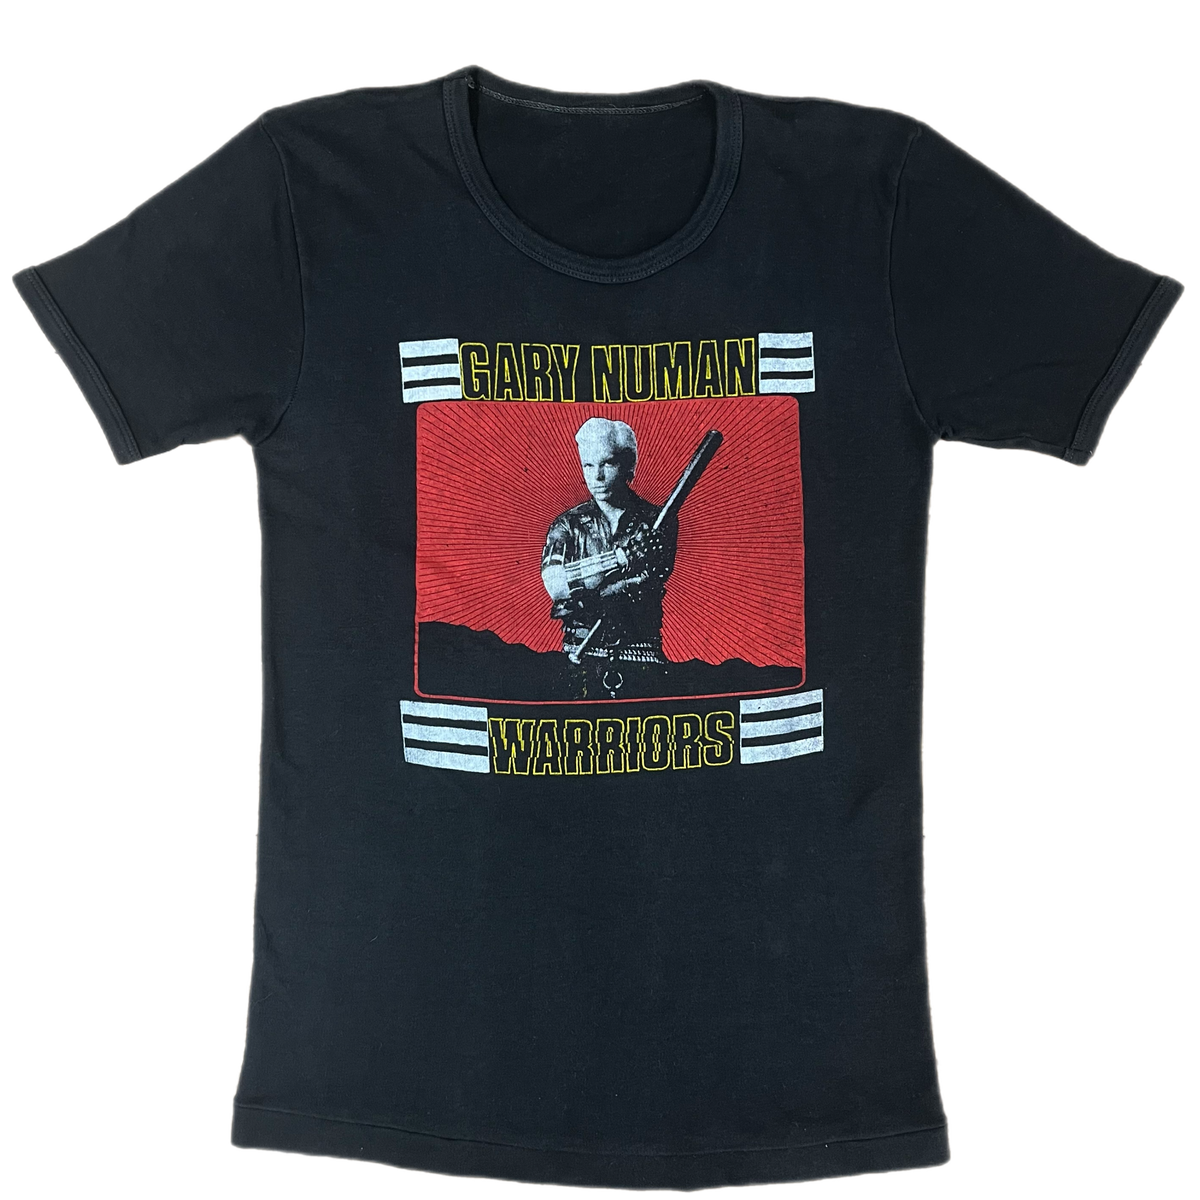 Vintage Gary Numan &quot;Warriors&quot; Tour T-Shirt